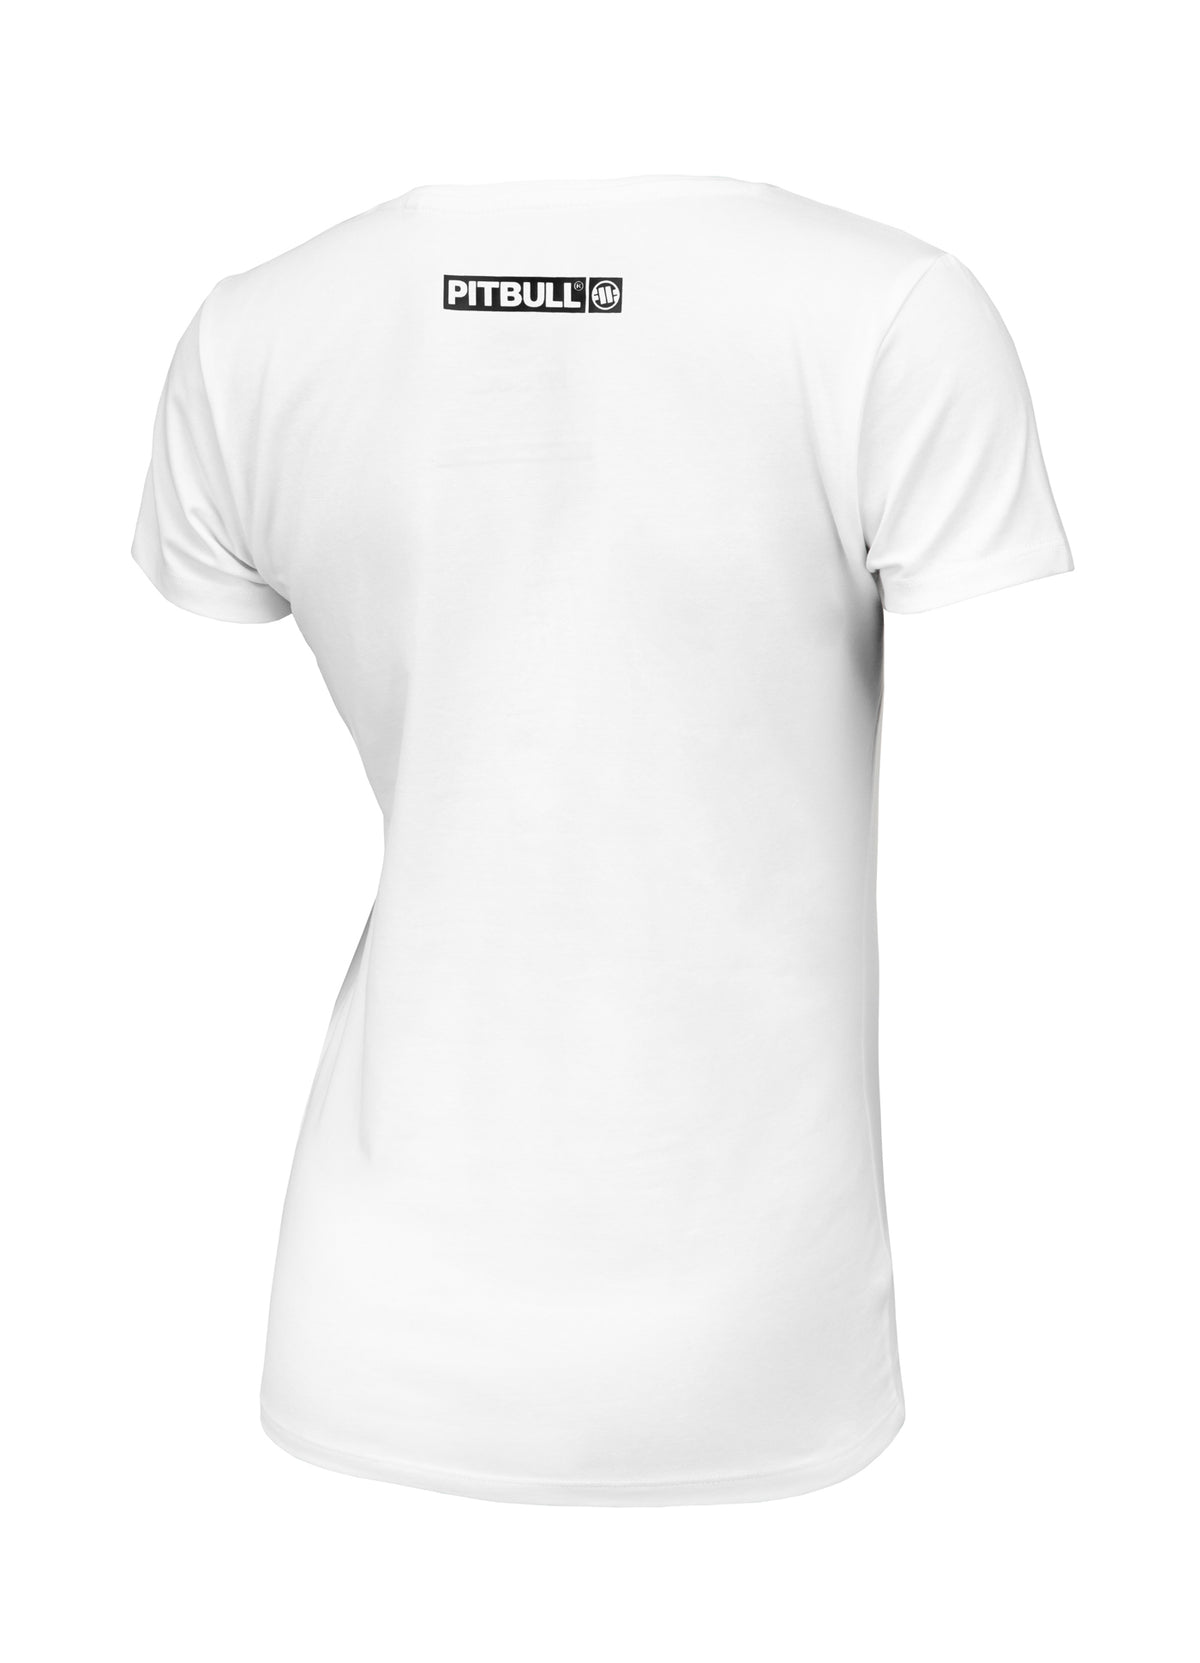 HILLTOP REGULAR White T-shirt - Pitbullstore.eu